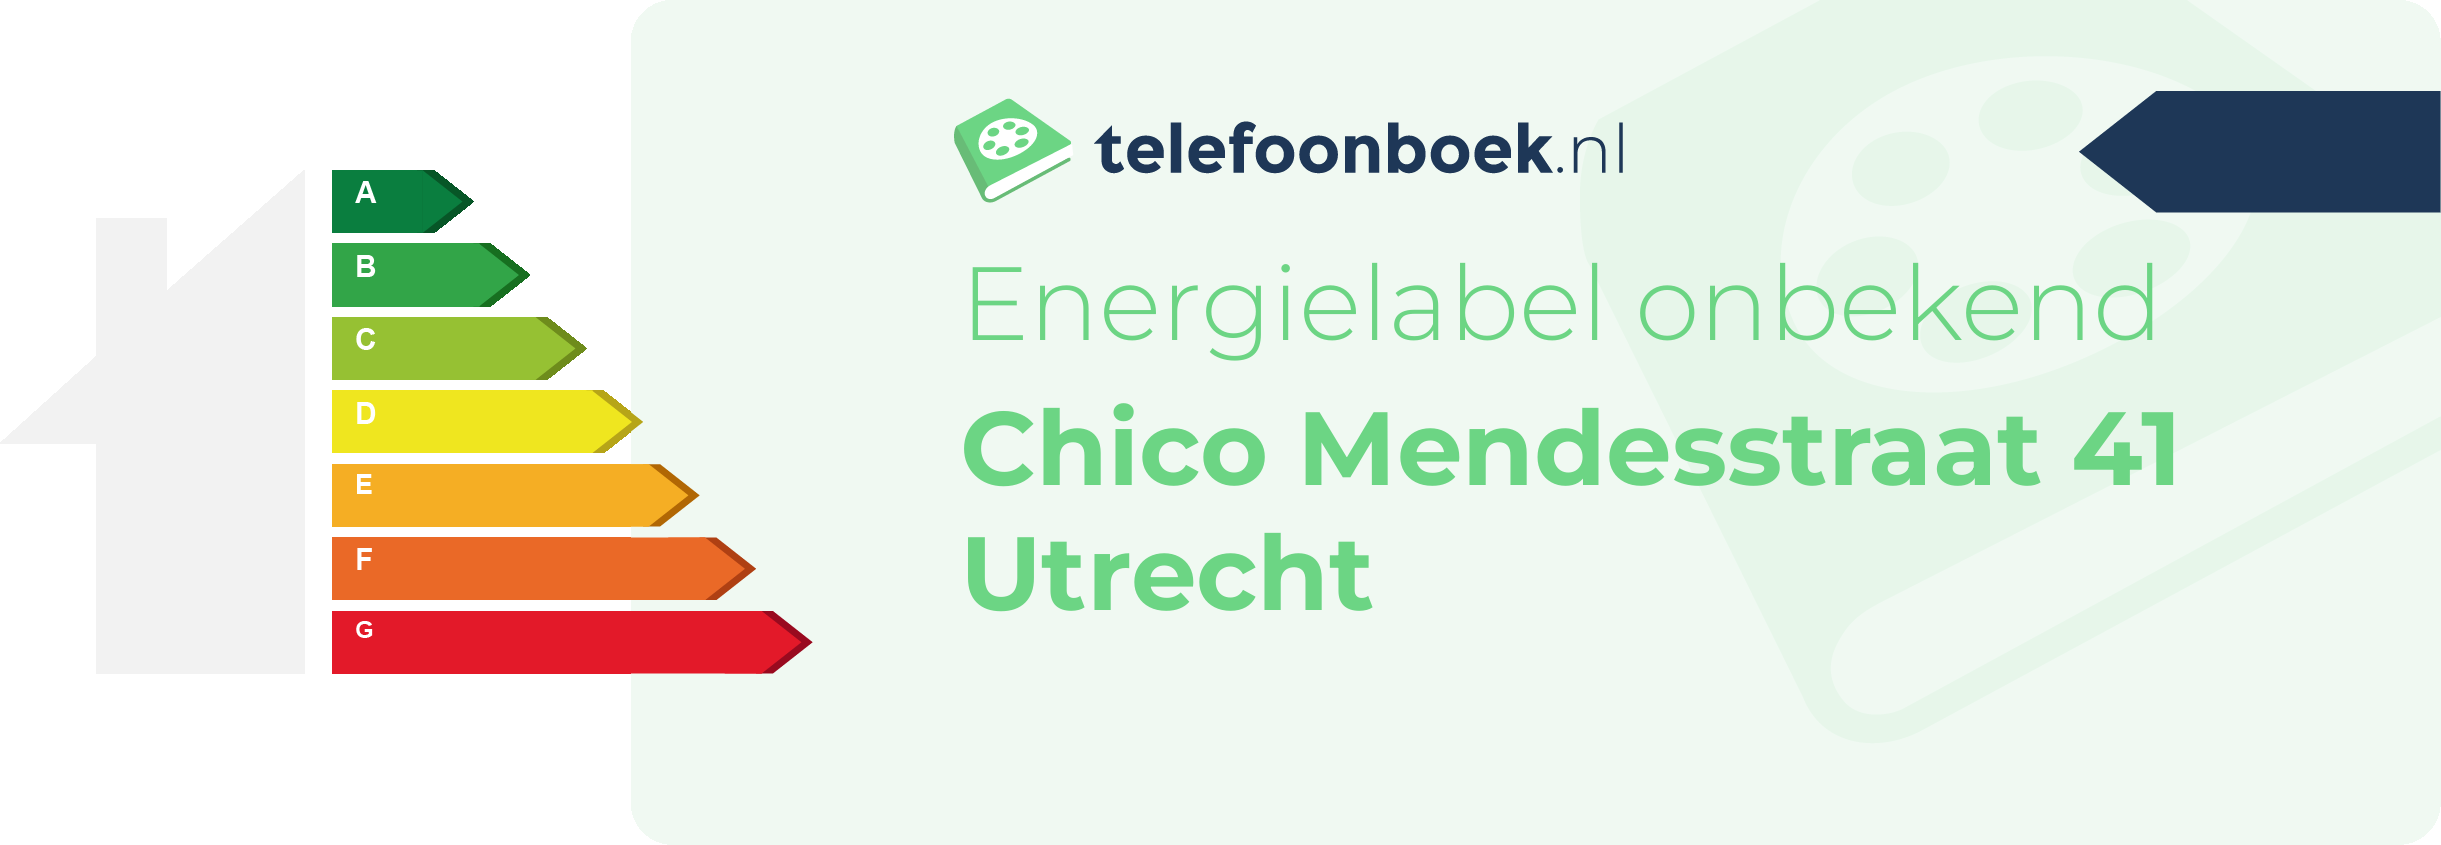 Energielabel Chico Mendesstraat 41 Utrecht